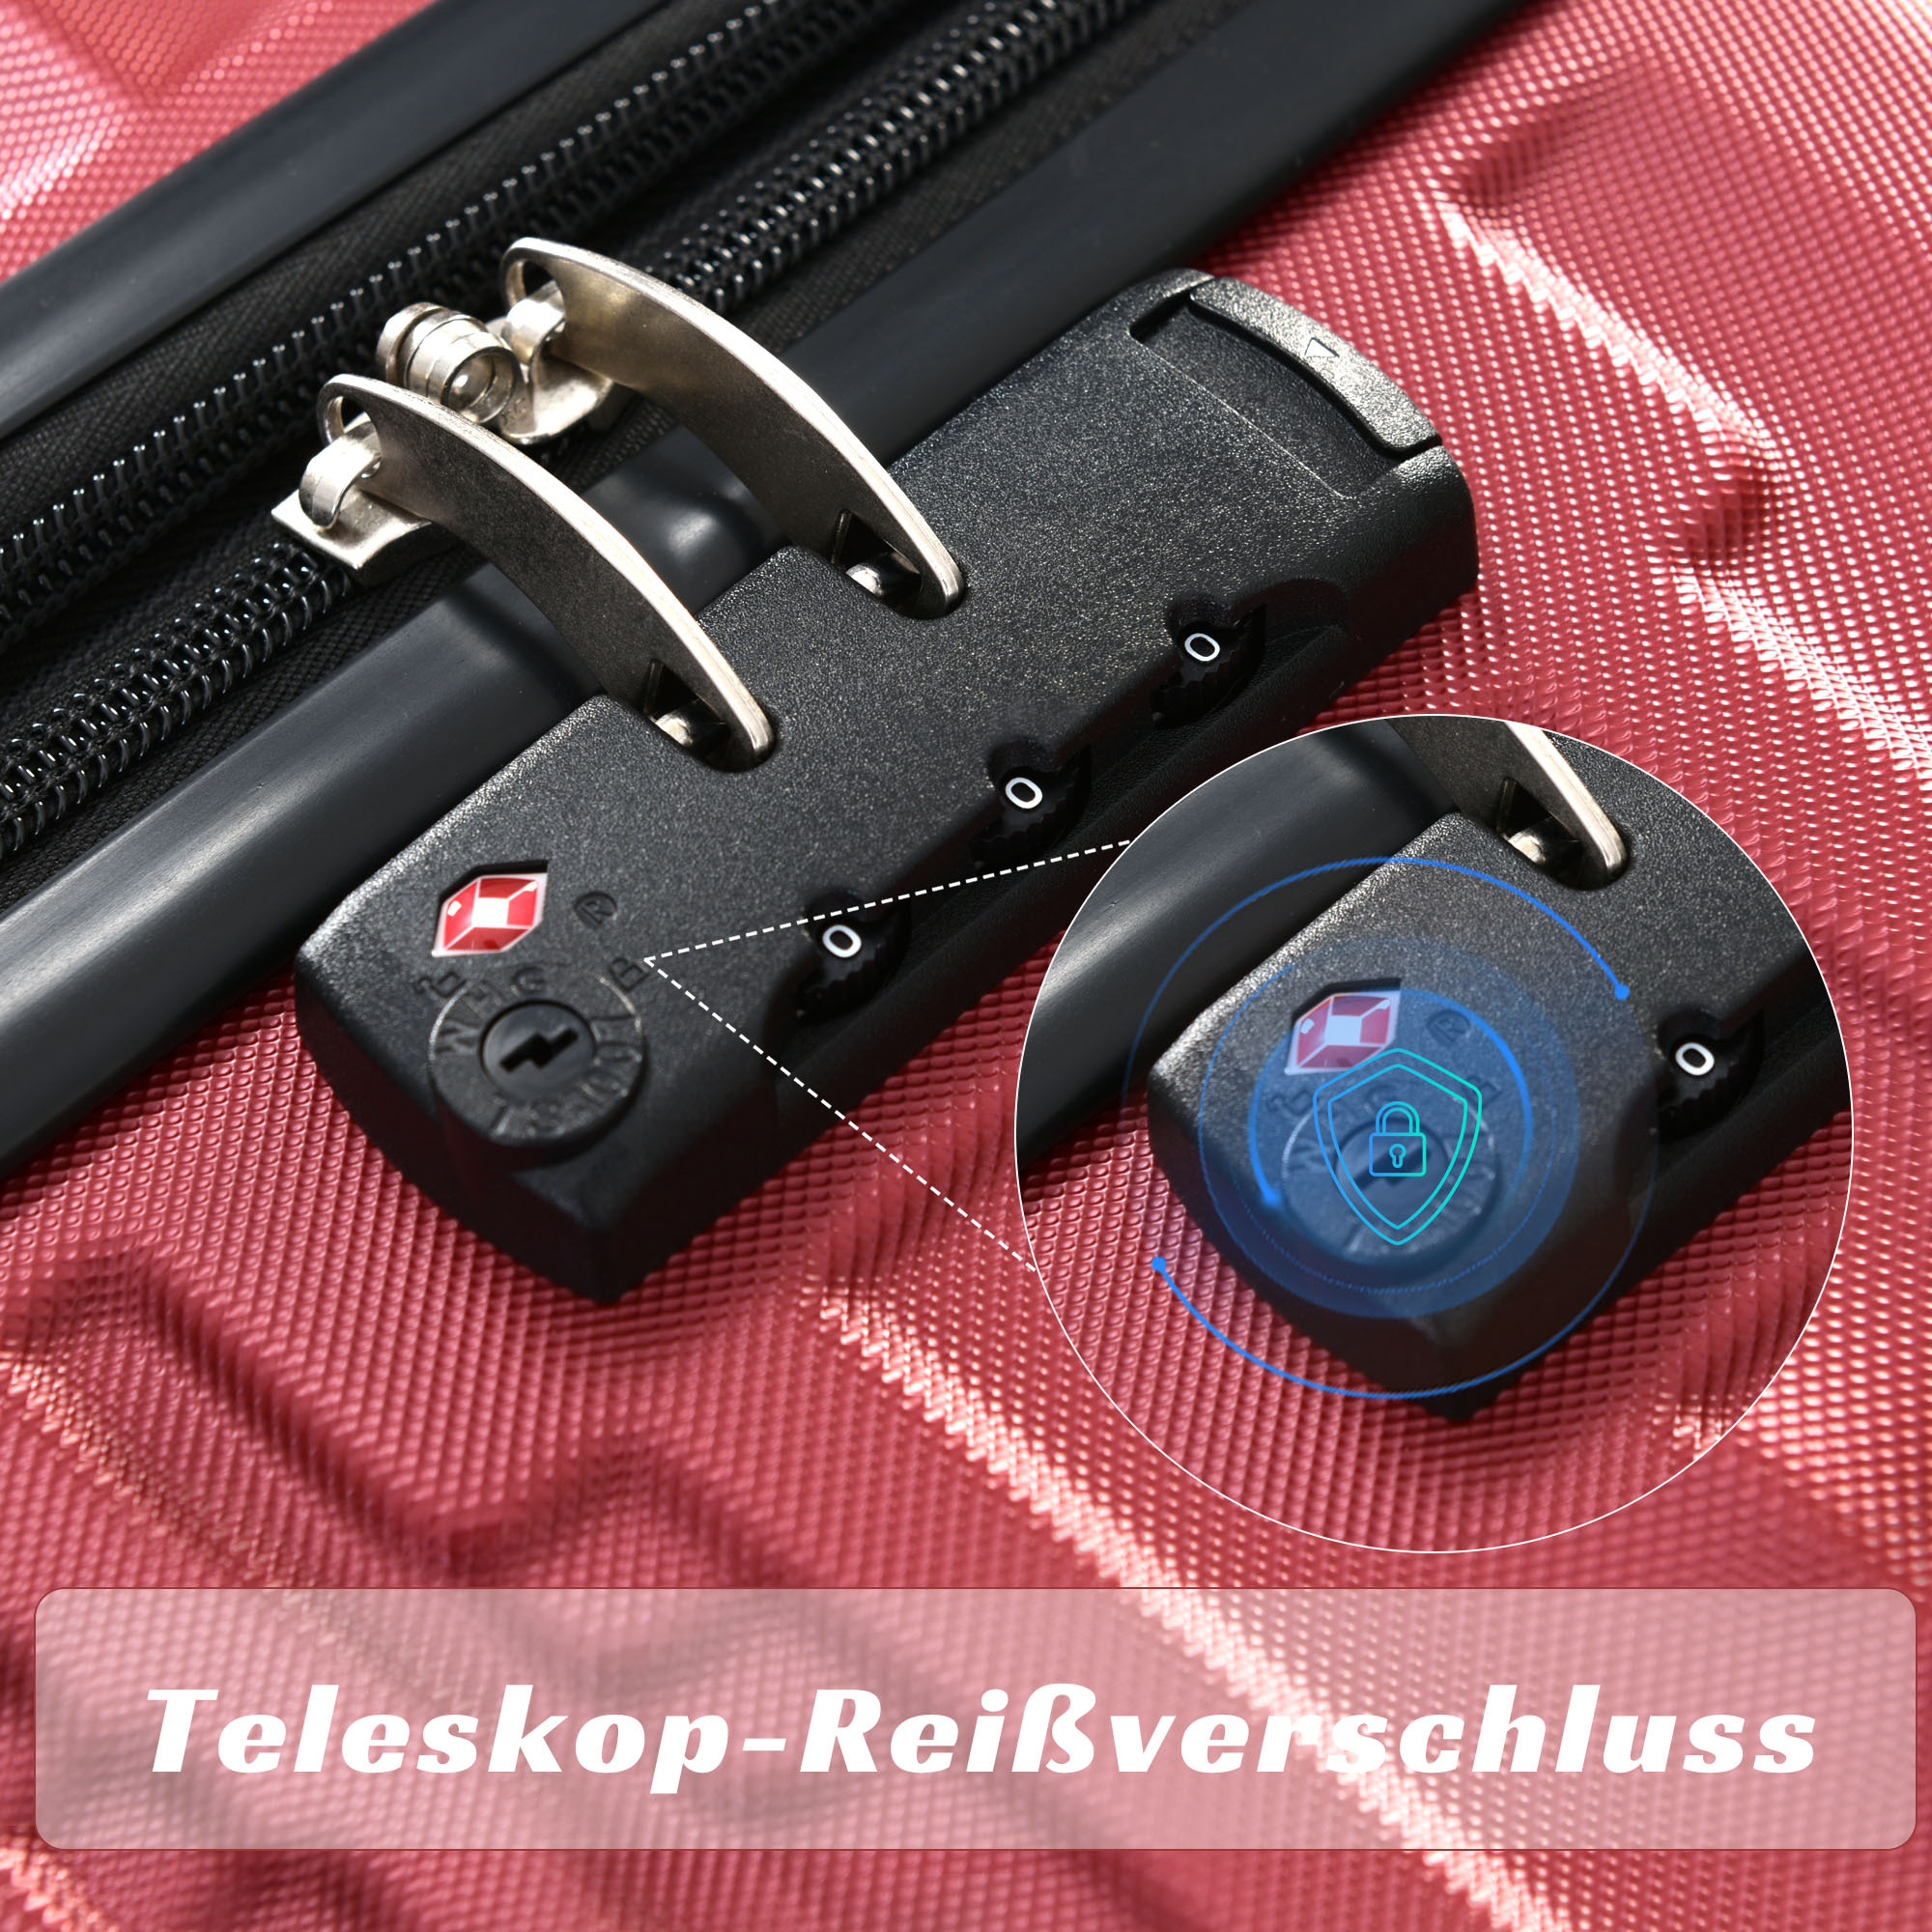 ABS-Gepäck, Räder 033R 4 Koffer MERAX TSA-Schloss, Hochwertiges